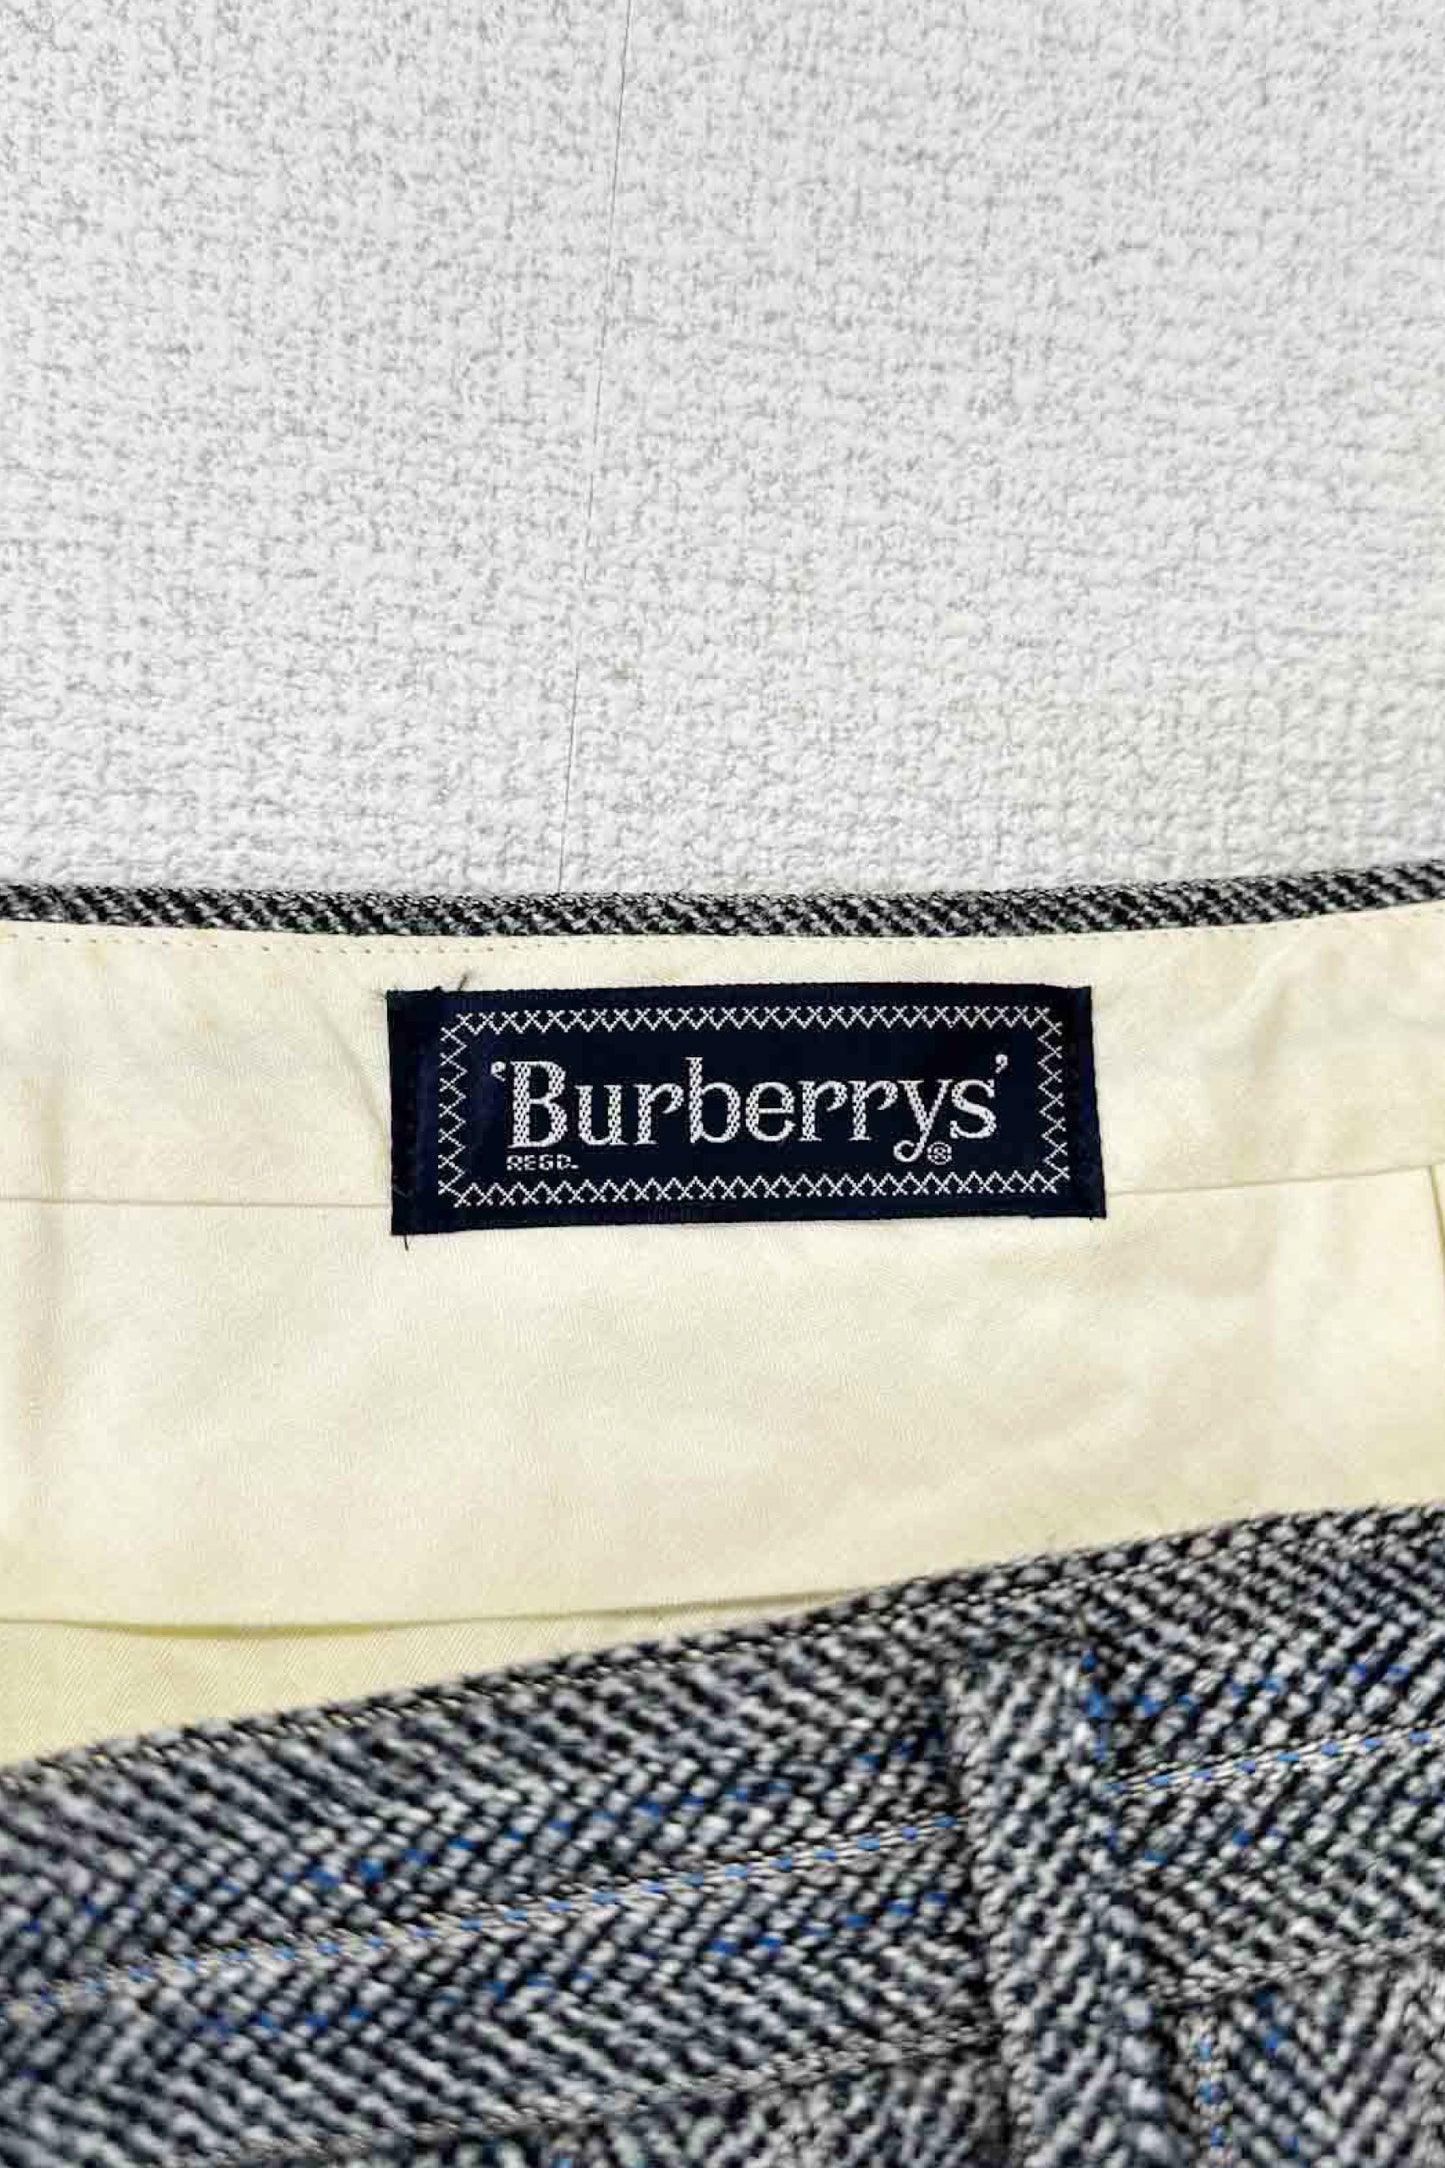 Burberrys wool pants